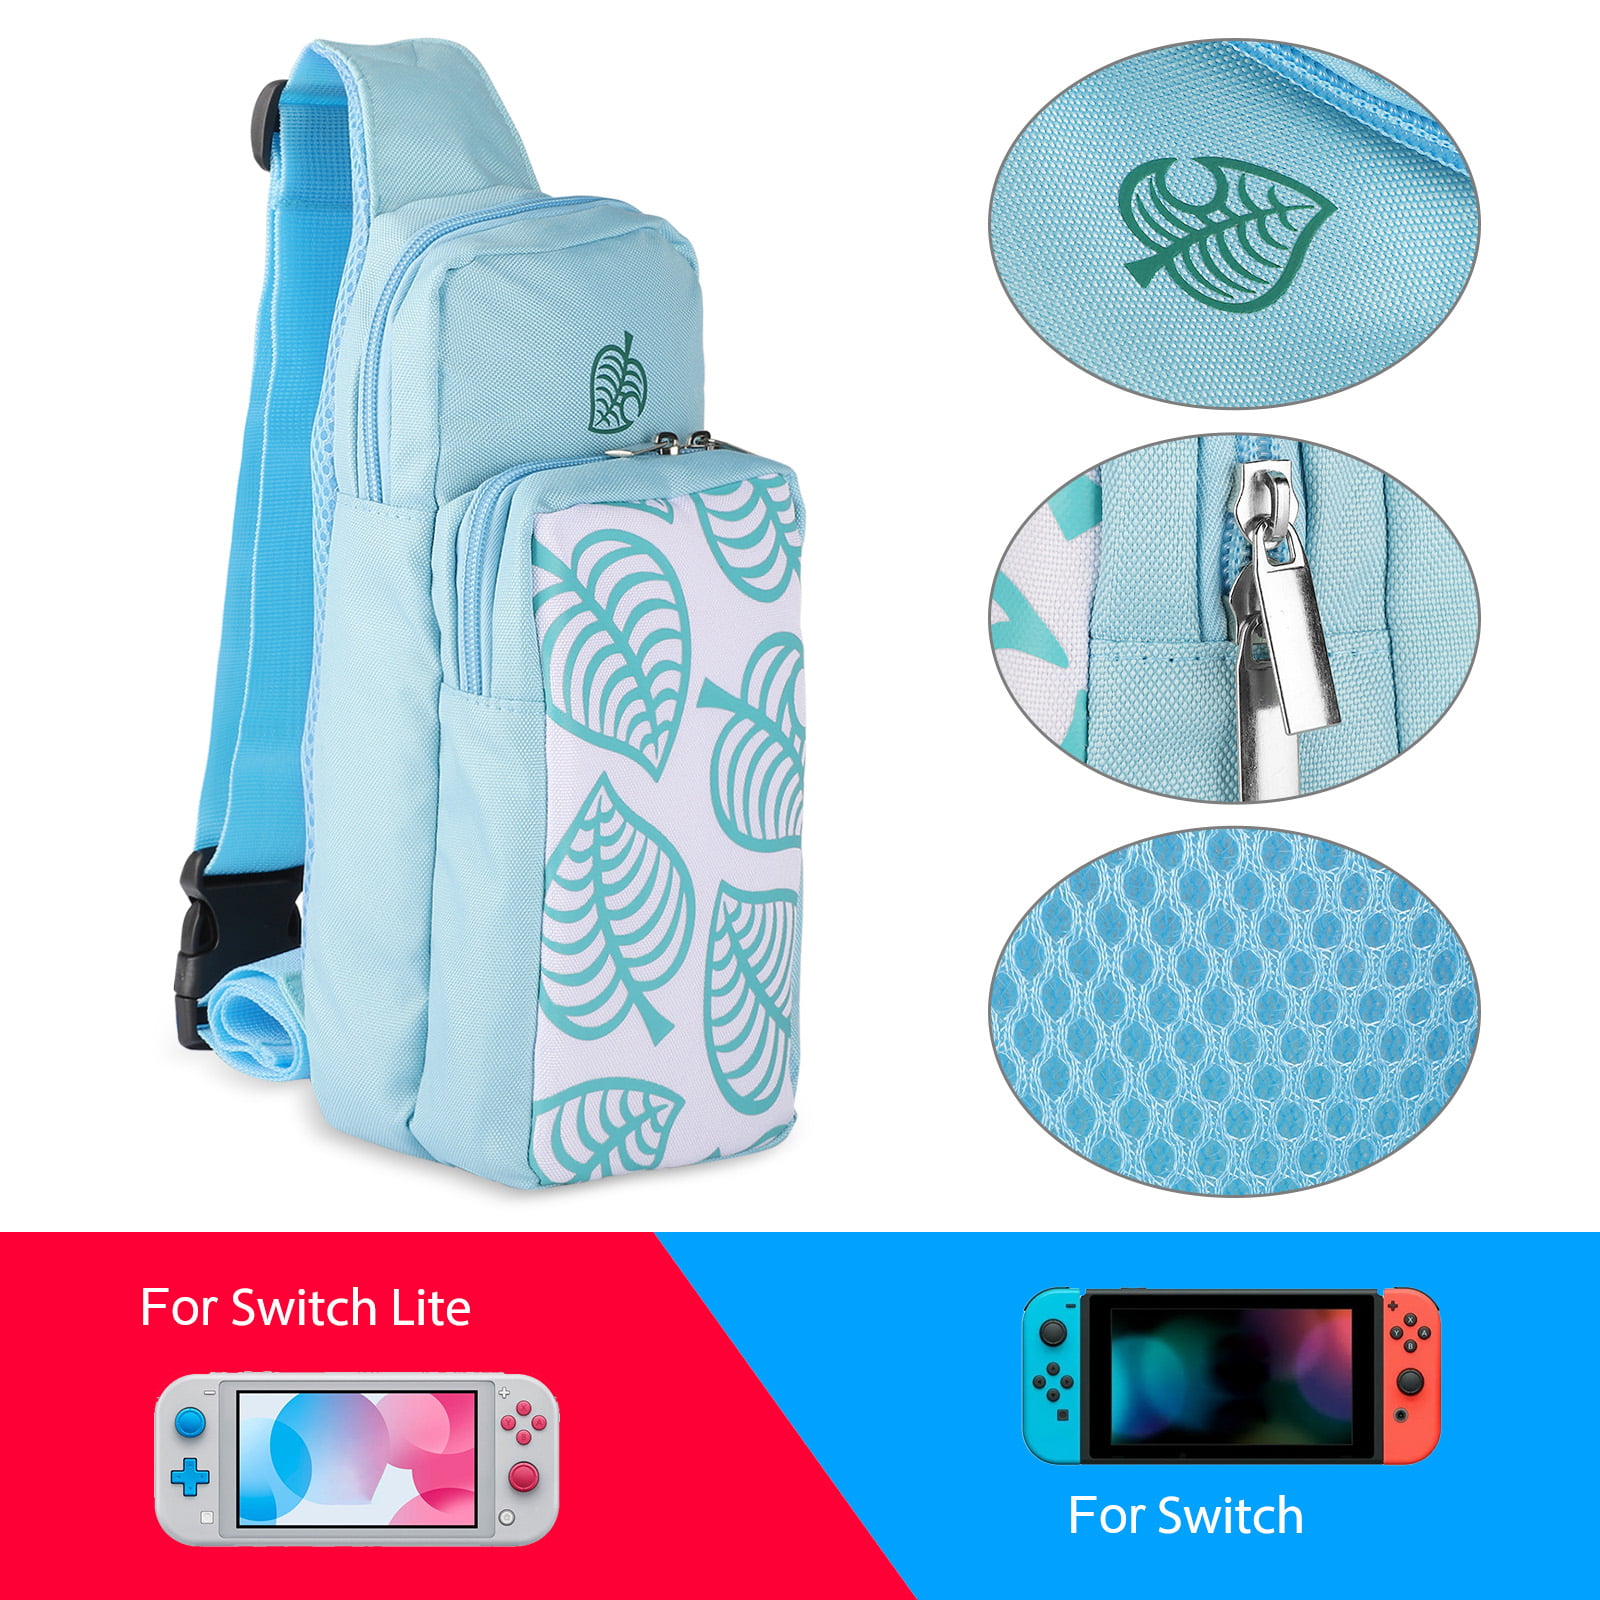 Tsv Shoulder Bag Travel Case For Nintendo Switch Switch Lite Carrying Storage Bag Protective Storage Sling Backpack With Adjustable Shoulder Strap Crossbody Bag Design For Animal Crossing Series Walmart Com Walmart Com